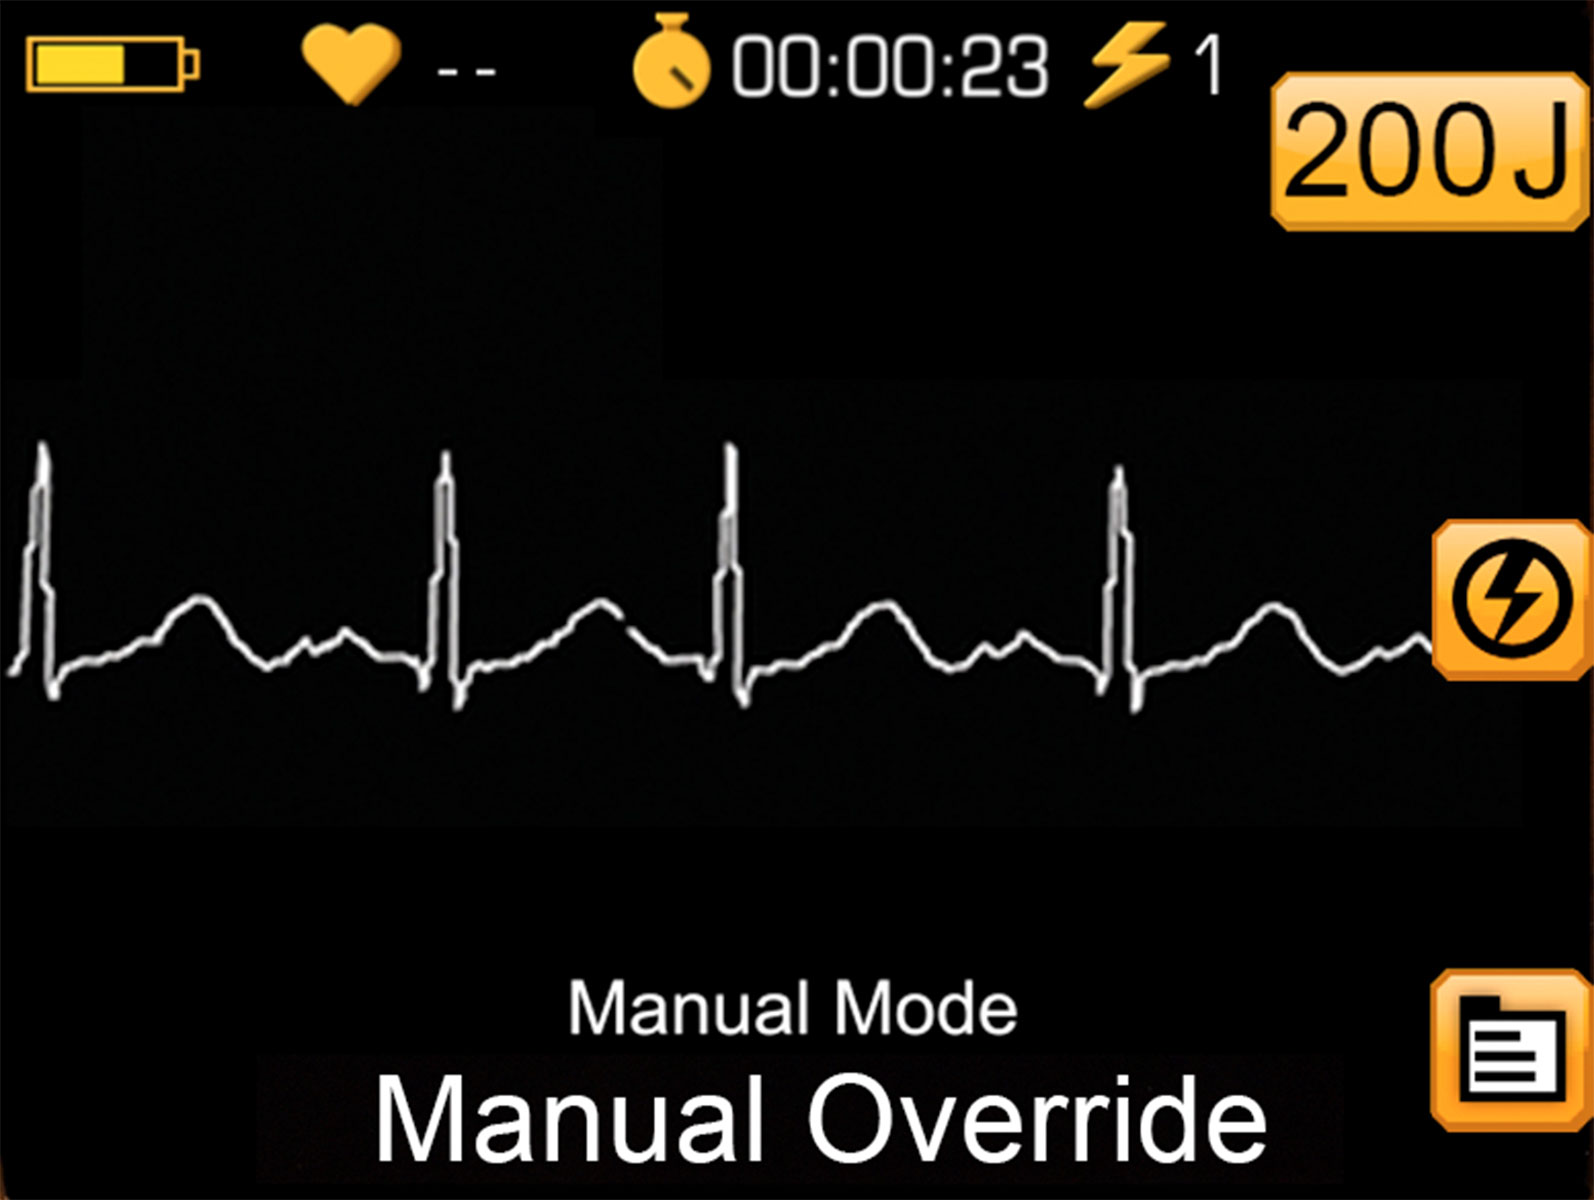 Lifeline Pro AED screen